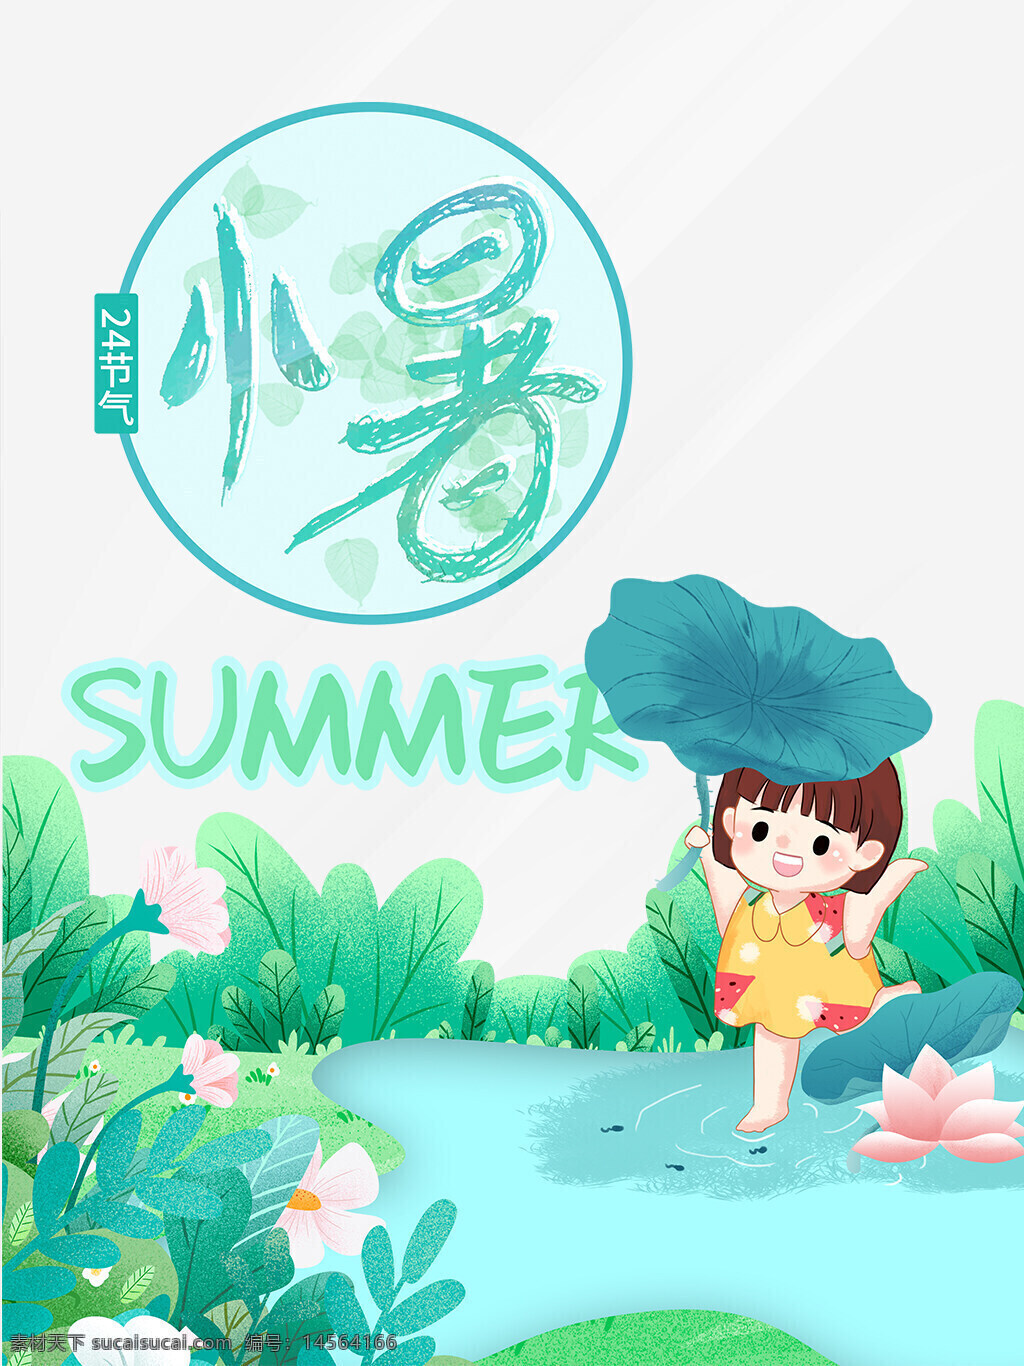 二十四节气小暑节气海报设计 夏天 花草 荷叶 小女孩 河边